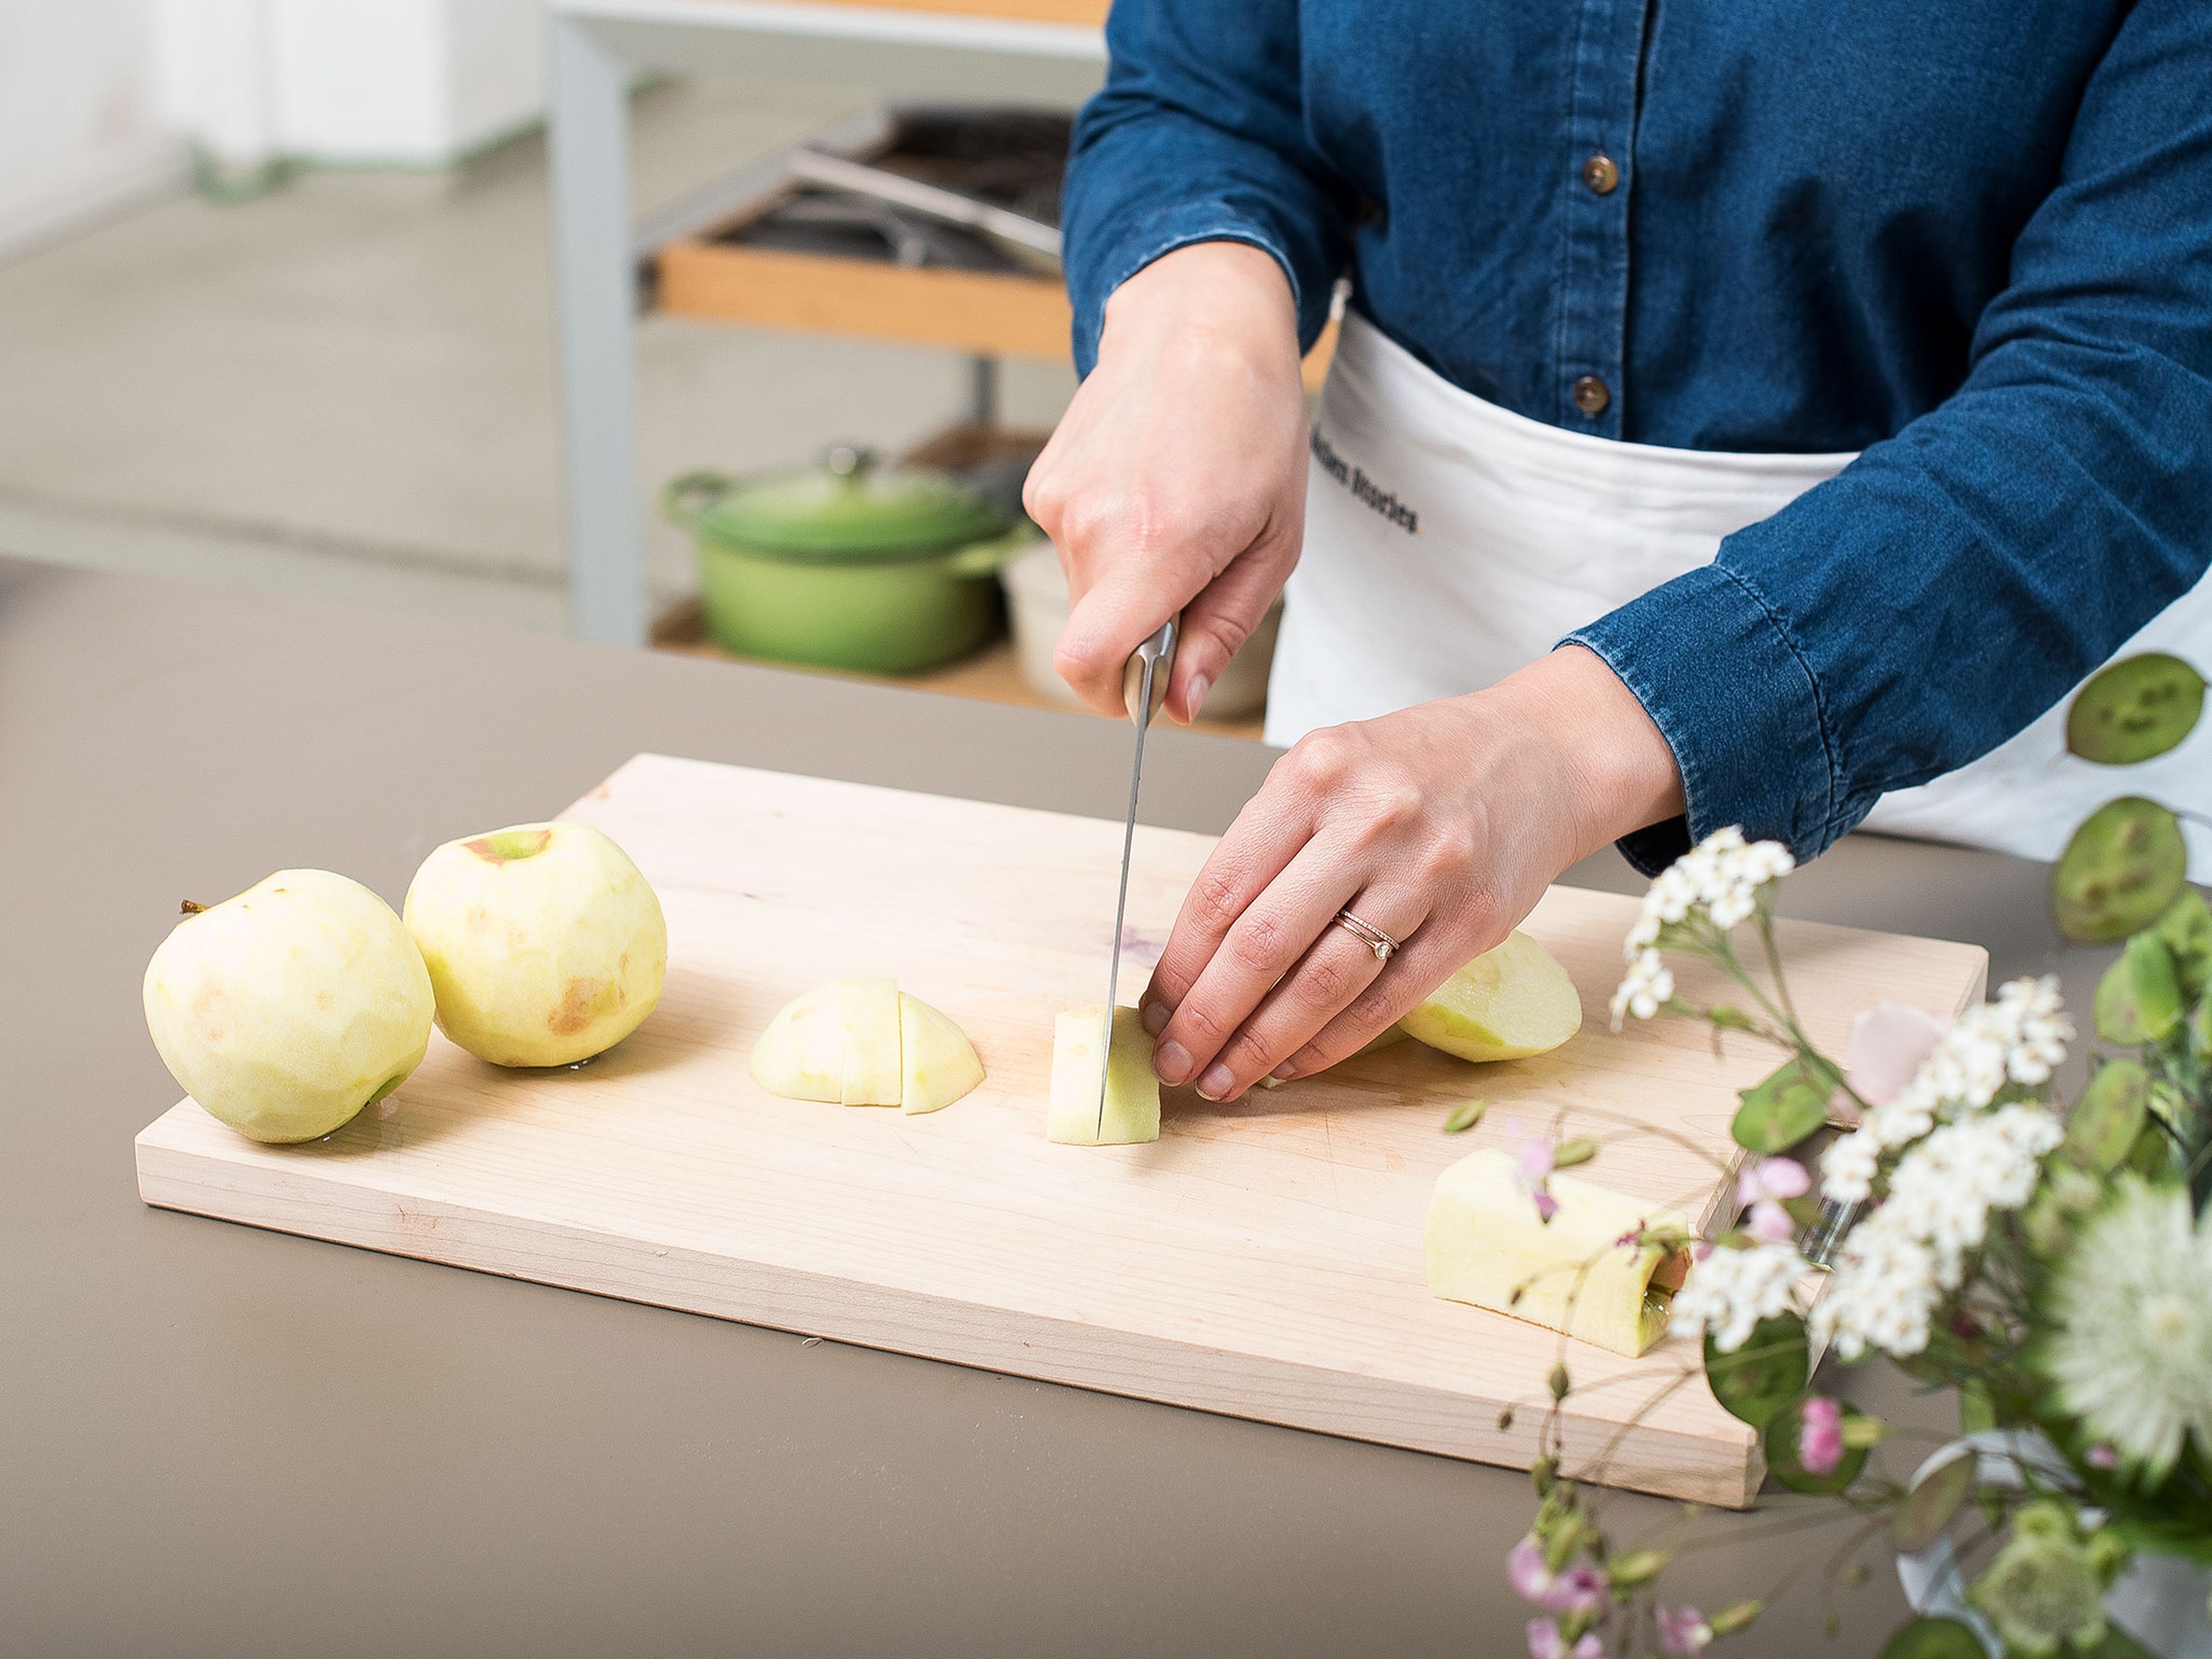 Backofen auf 180°C vorheizen. Backblech mit Backpapier auslegen oder einfetten und mit Mehl bestäuben. Äpfel schälen, entkernen und vierteln. Die Apfelviertel in dünne Scheiben schneiden und in einer großen Schüssel mit Zitronensaft vermengen. Anschließend beiseitestellen.